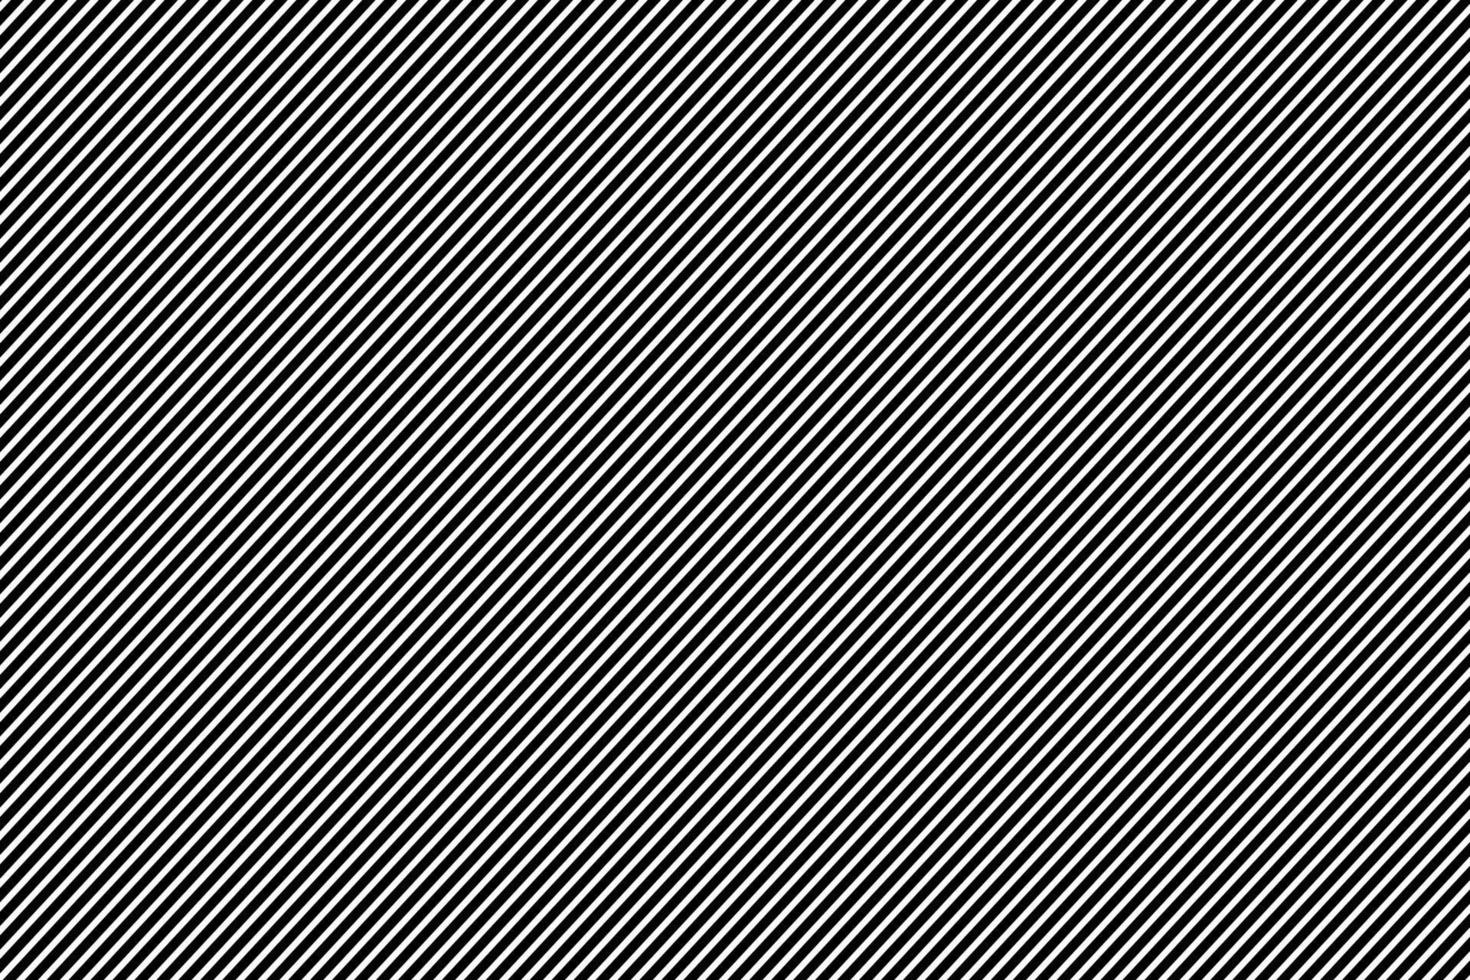 imagem de fundo de finas listras pretas. dispostos na diagonal, ilustração vetorial. vetor